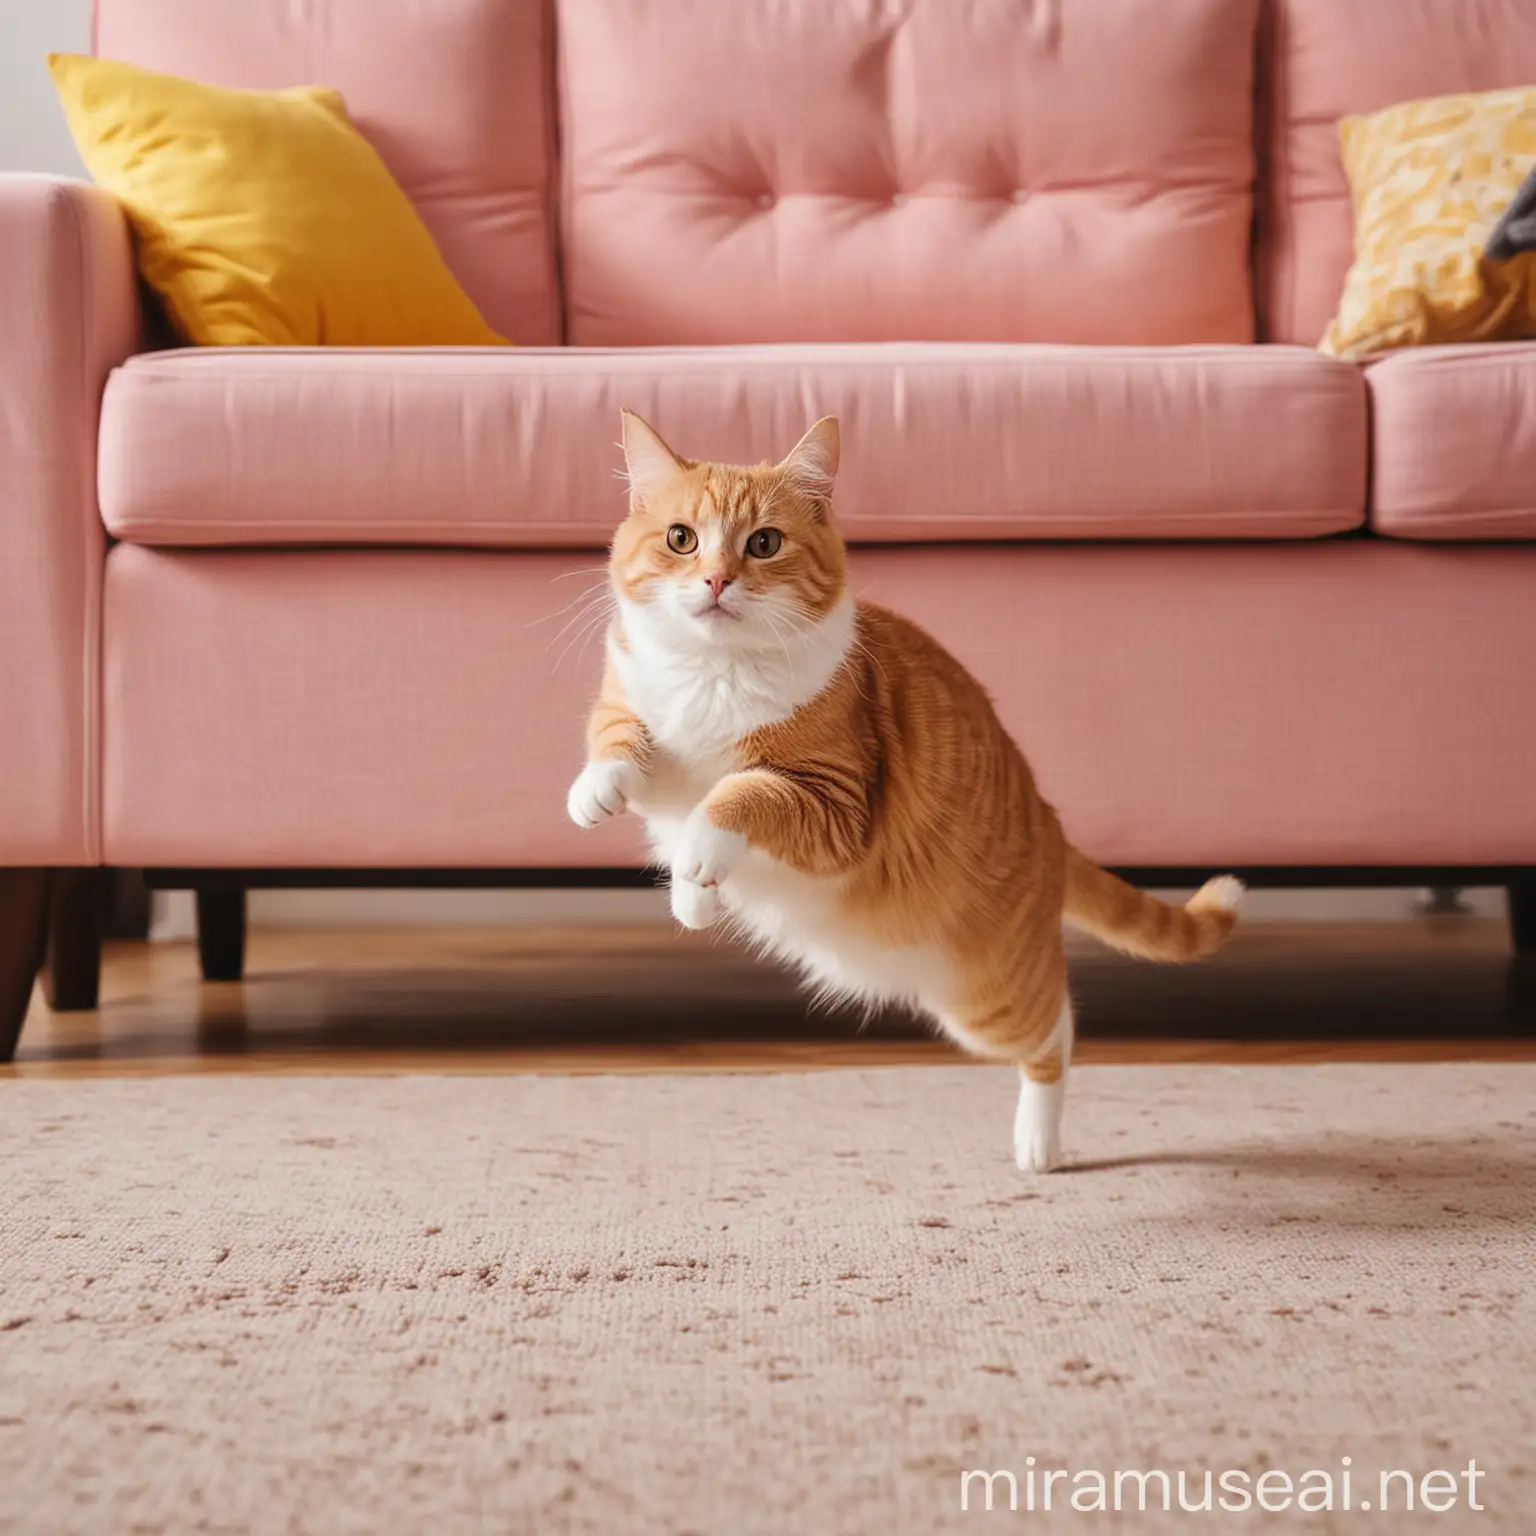 Кошка прыгает с дивана на пол. Розовые и желтые тона